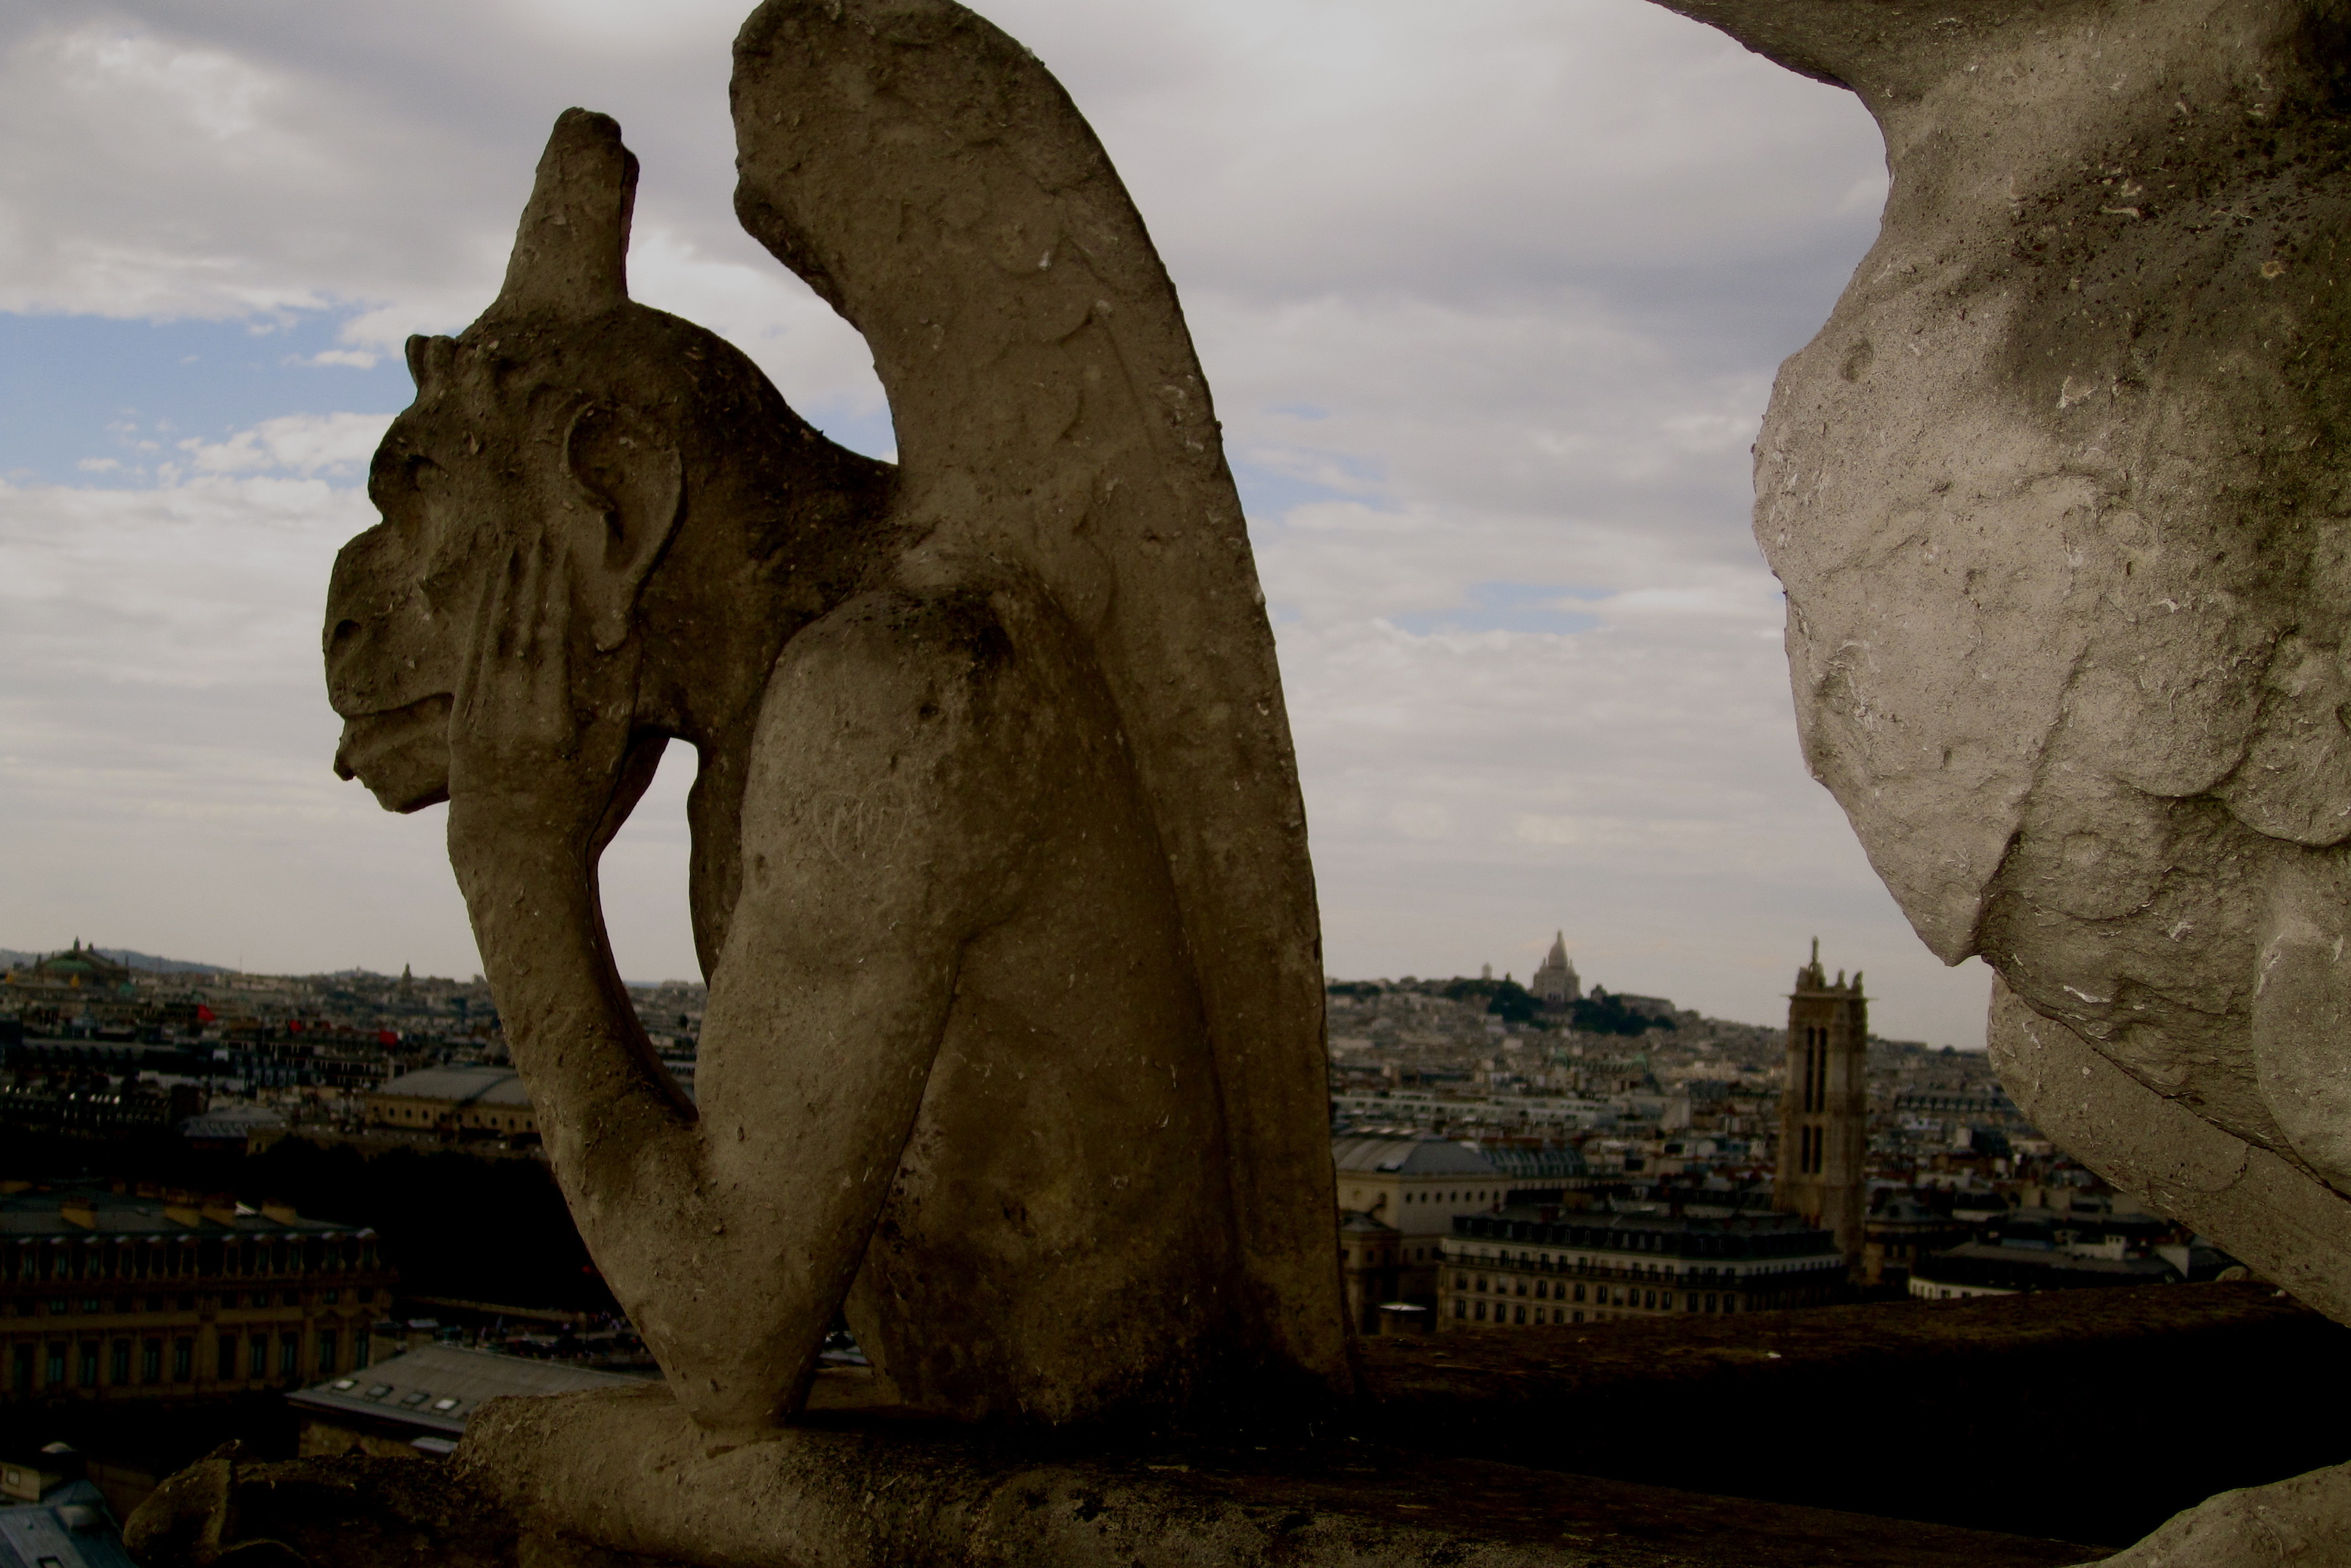 The Gargoyles of Notre Dame de Paris